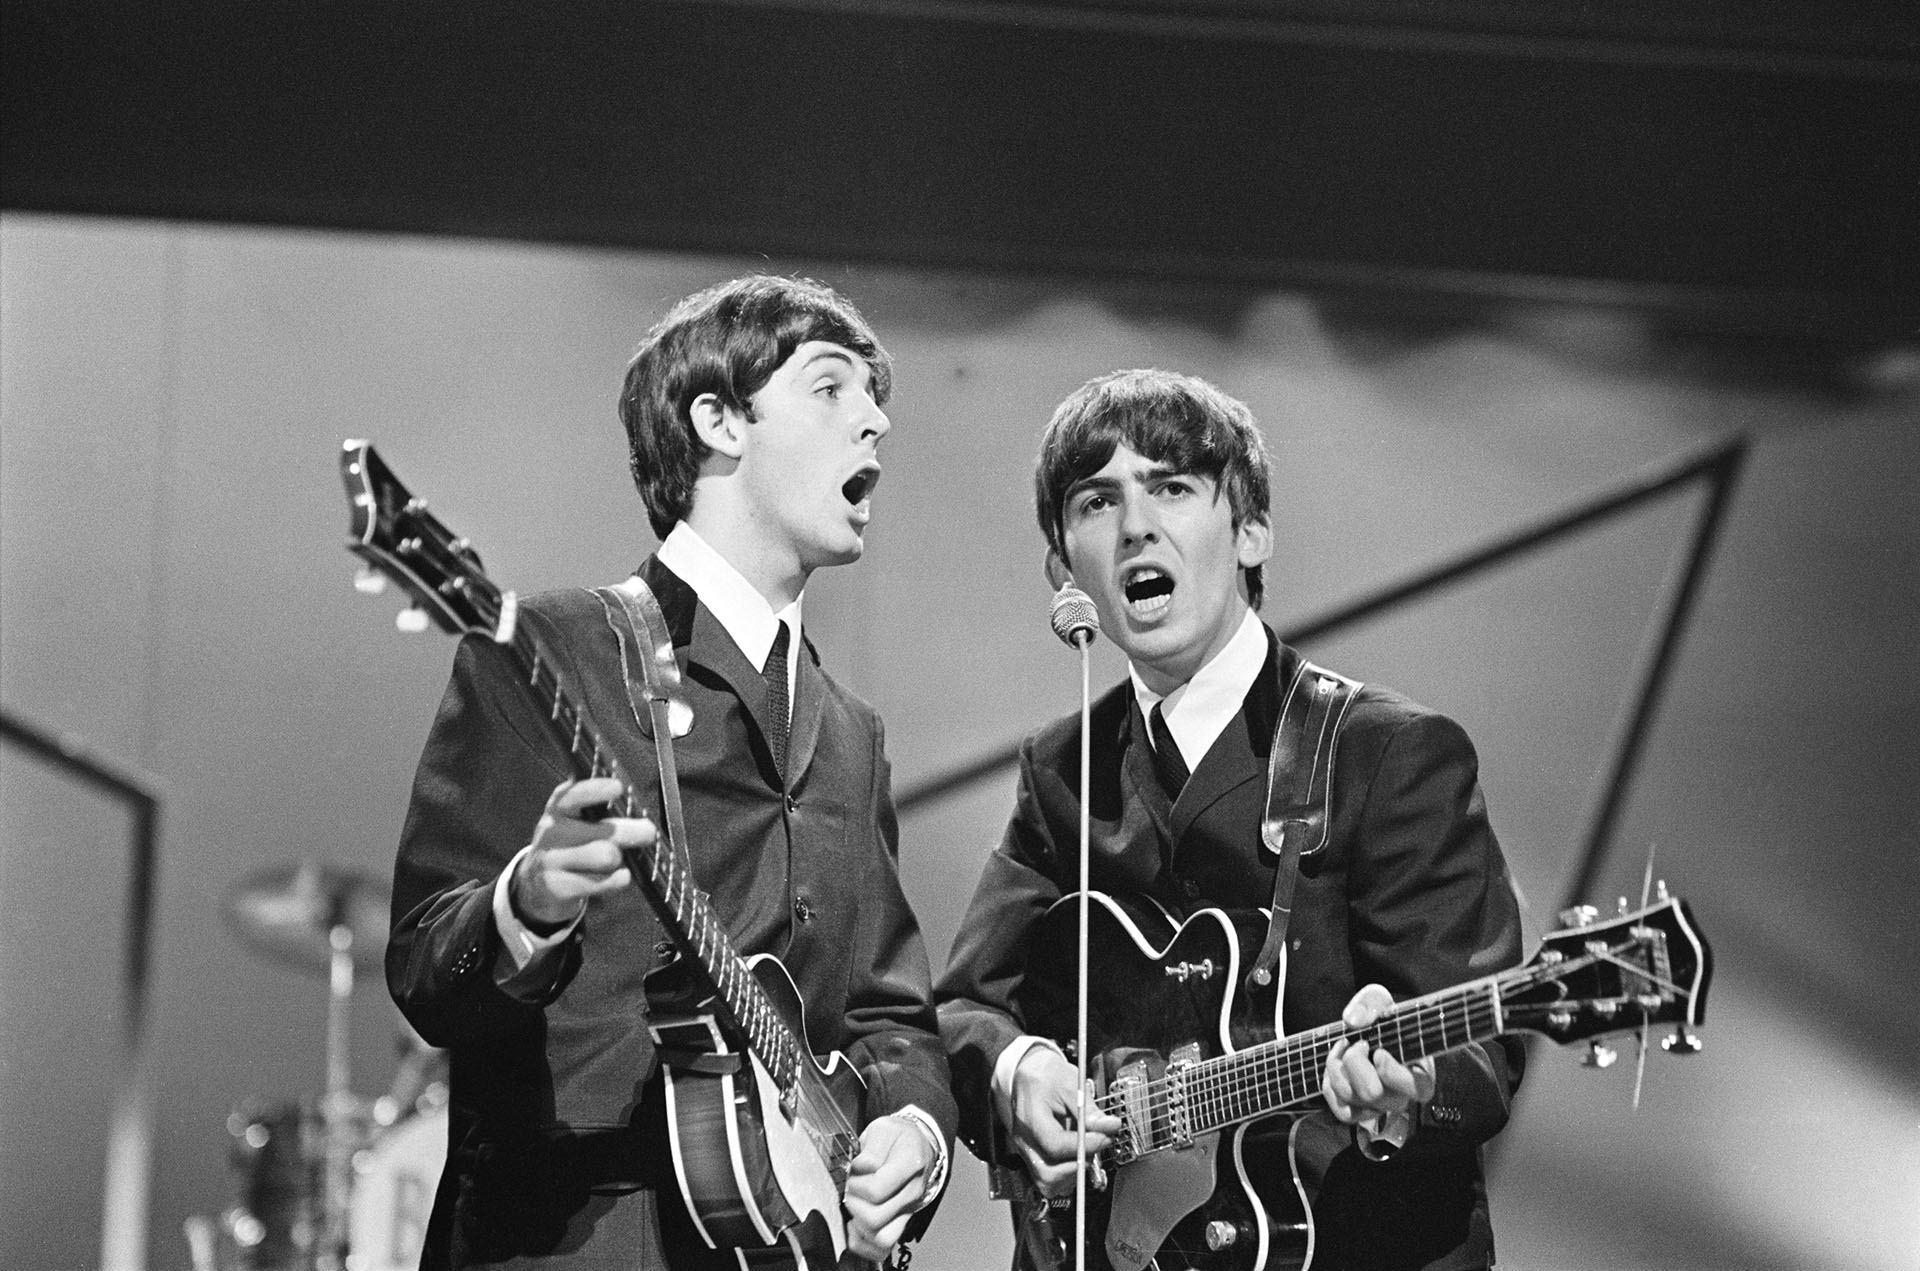 Paul y George tocando en Inglaterra con sus típicos trajes y sus moptops. Finalizaba 1963: los Beatles estaban por maravillar al mundo Photo by Edward Wing/Daily Express/Hulton Archive/Getty Images)